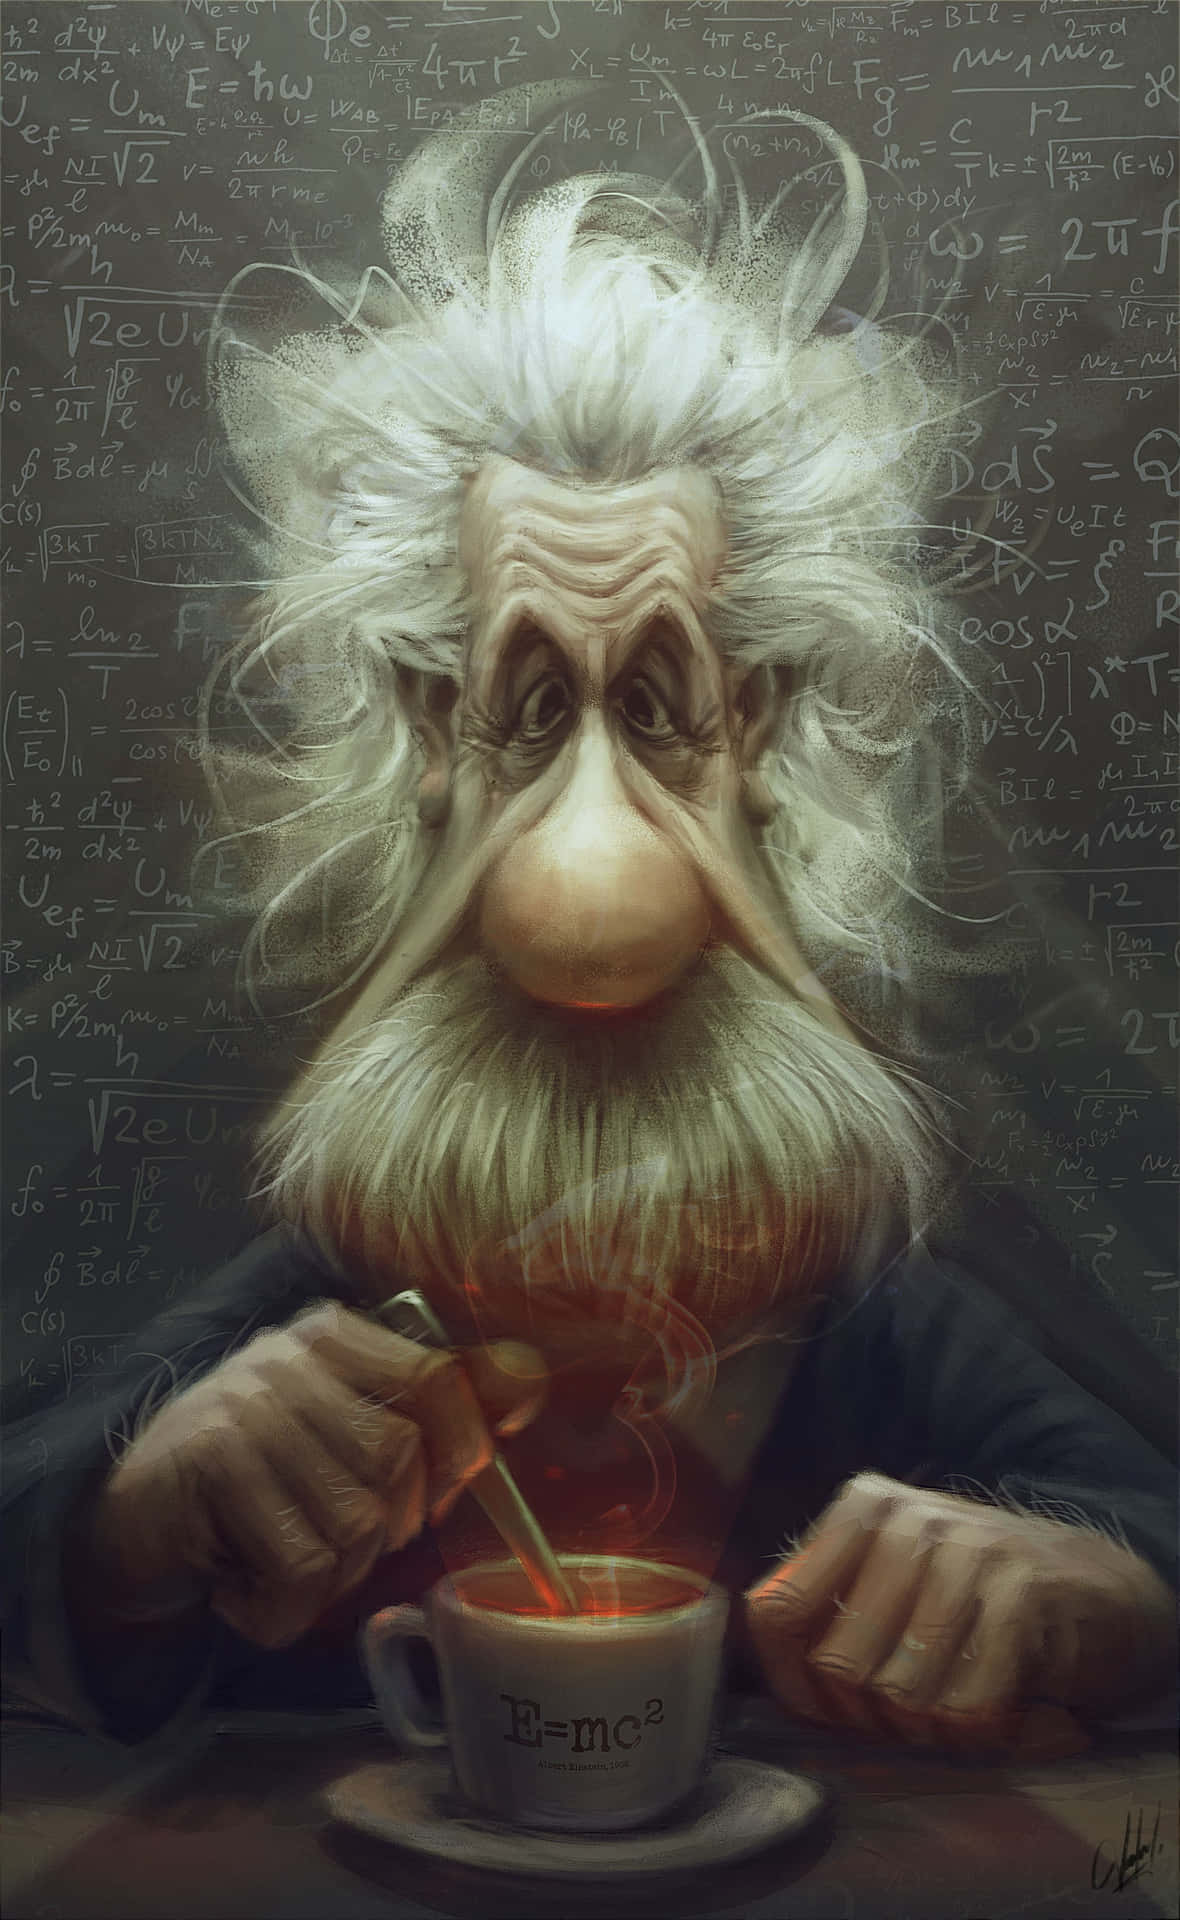 "Albert Einstein, a brilliant scientific mind."